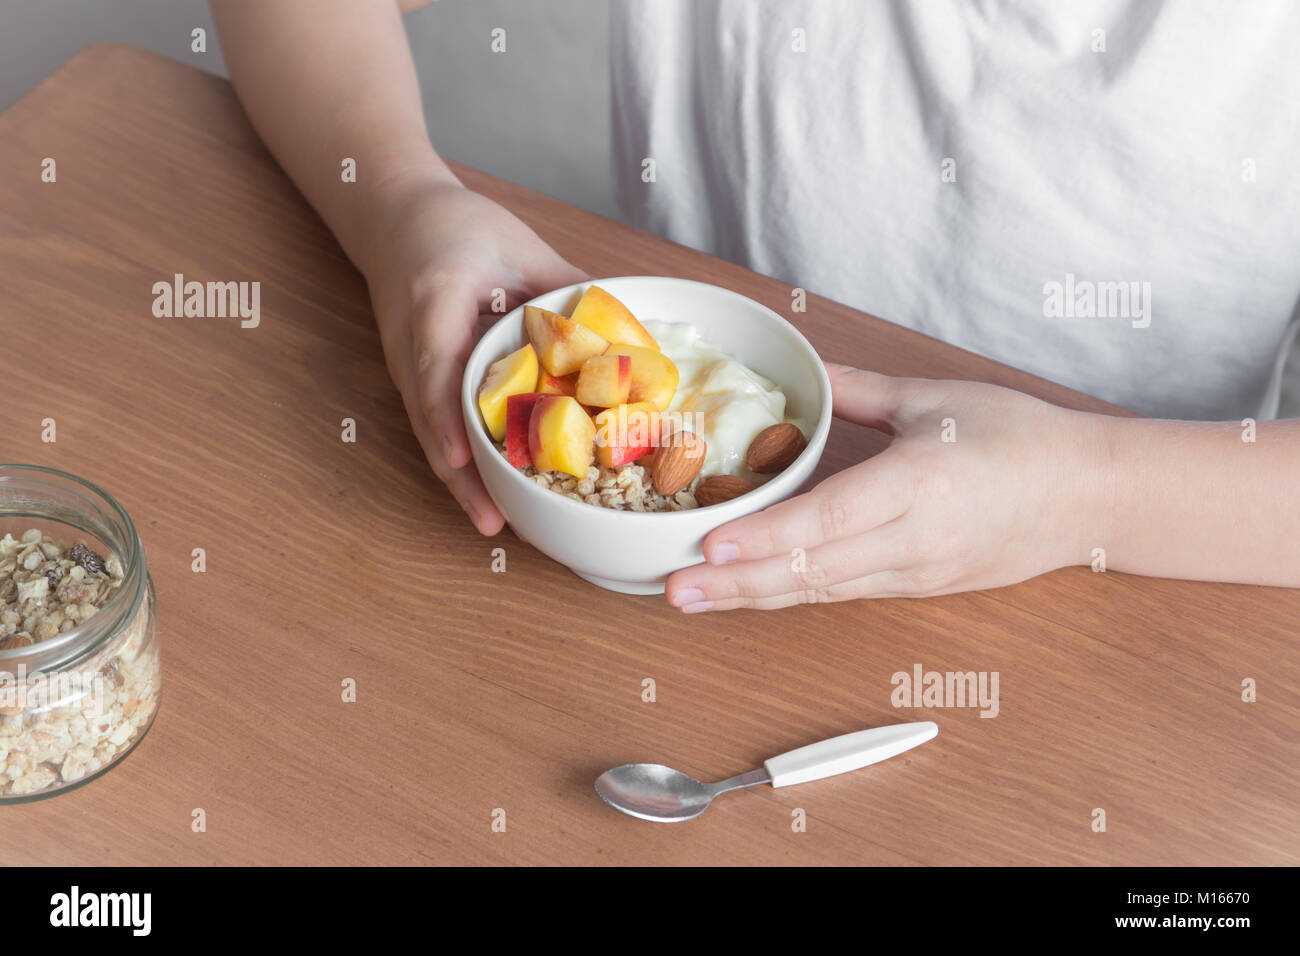 Comer un desayuno saludable el tazón. Granola de avena, yogures, nectarinas frescos inwhite bowl en mujeres (hijo) las manos sobre la mesa de madera. Comer una dieta limpia Foto de stock